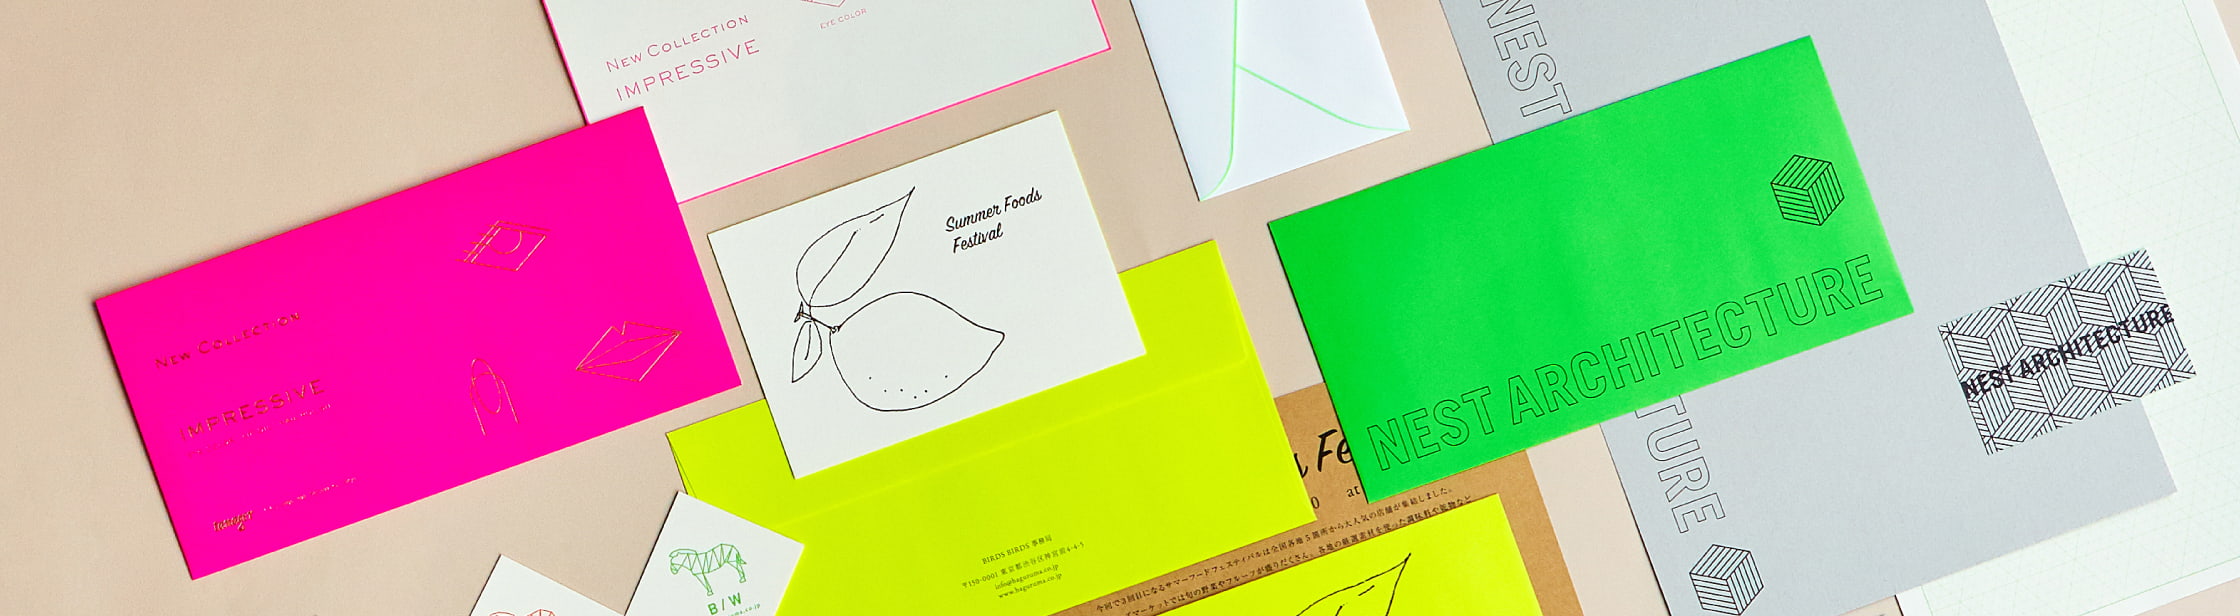 蛍光色の封筒 カード 羽車公式サイト 紙 印刷 デザイン